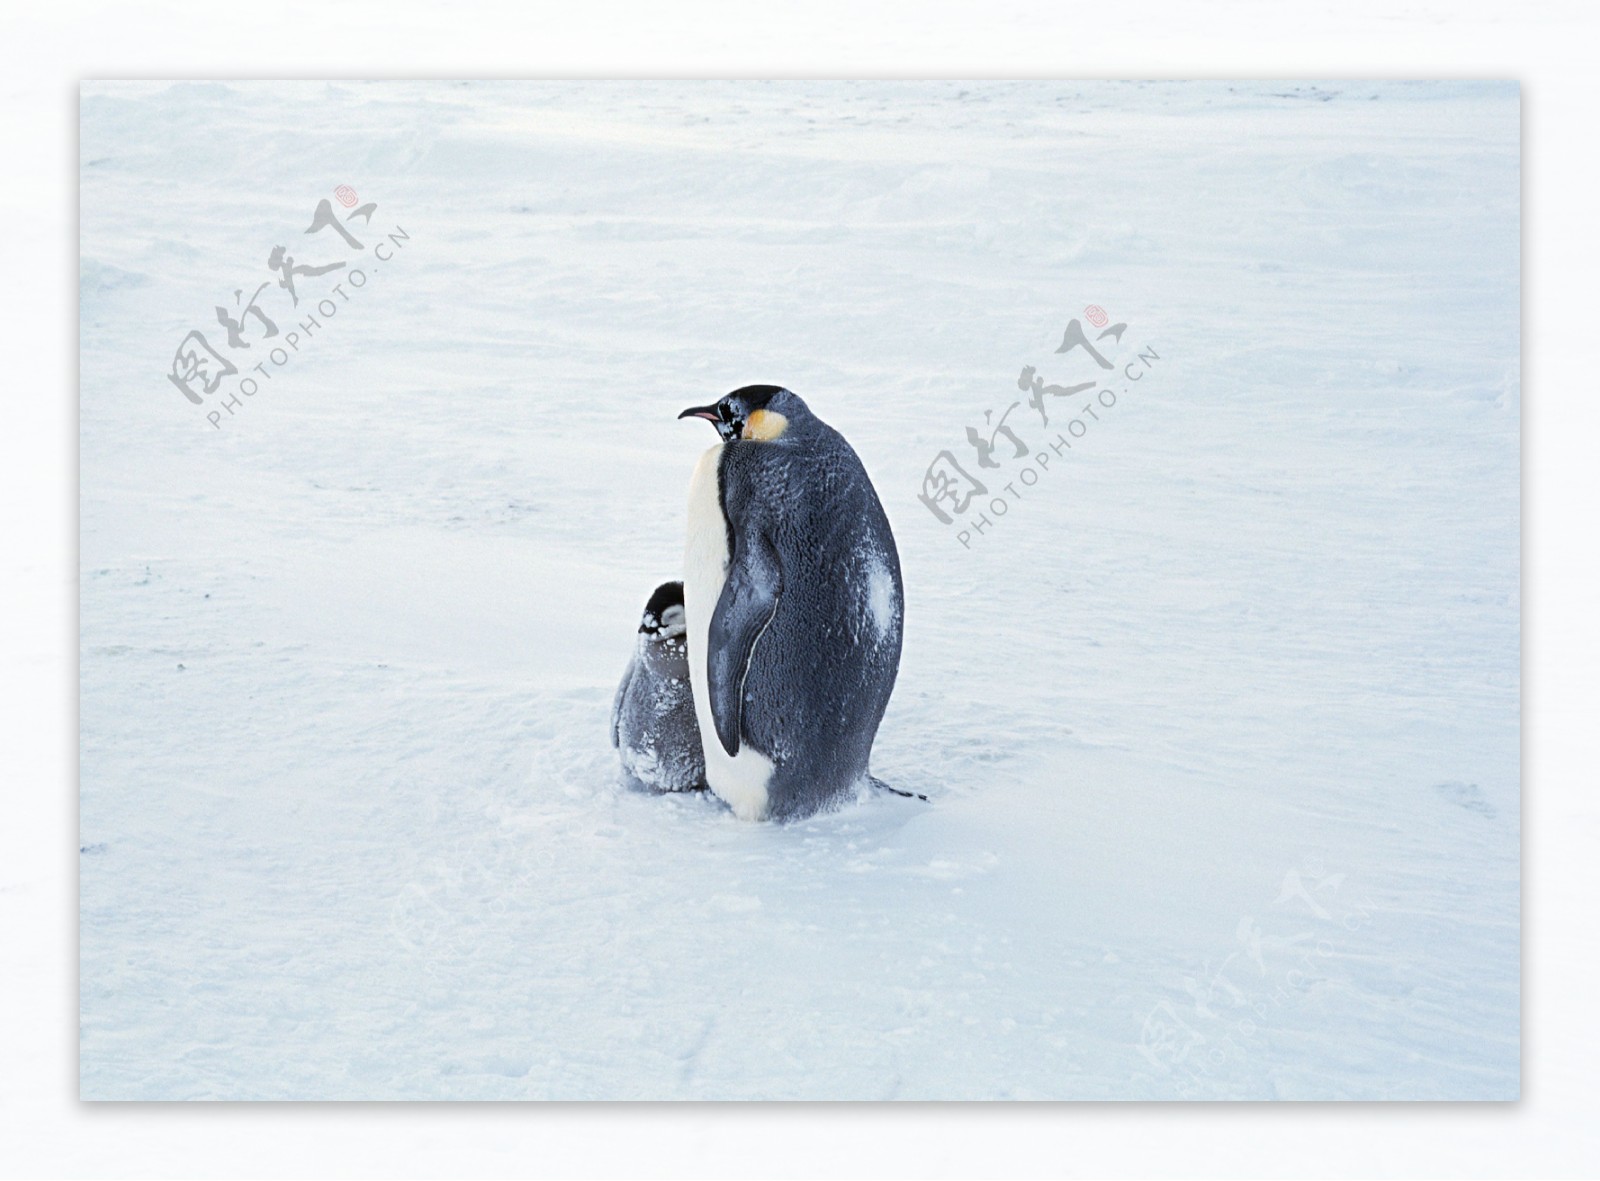 企鹅摄影图片